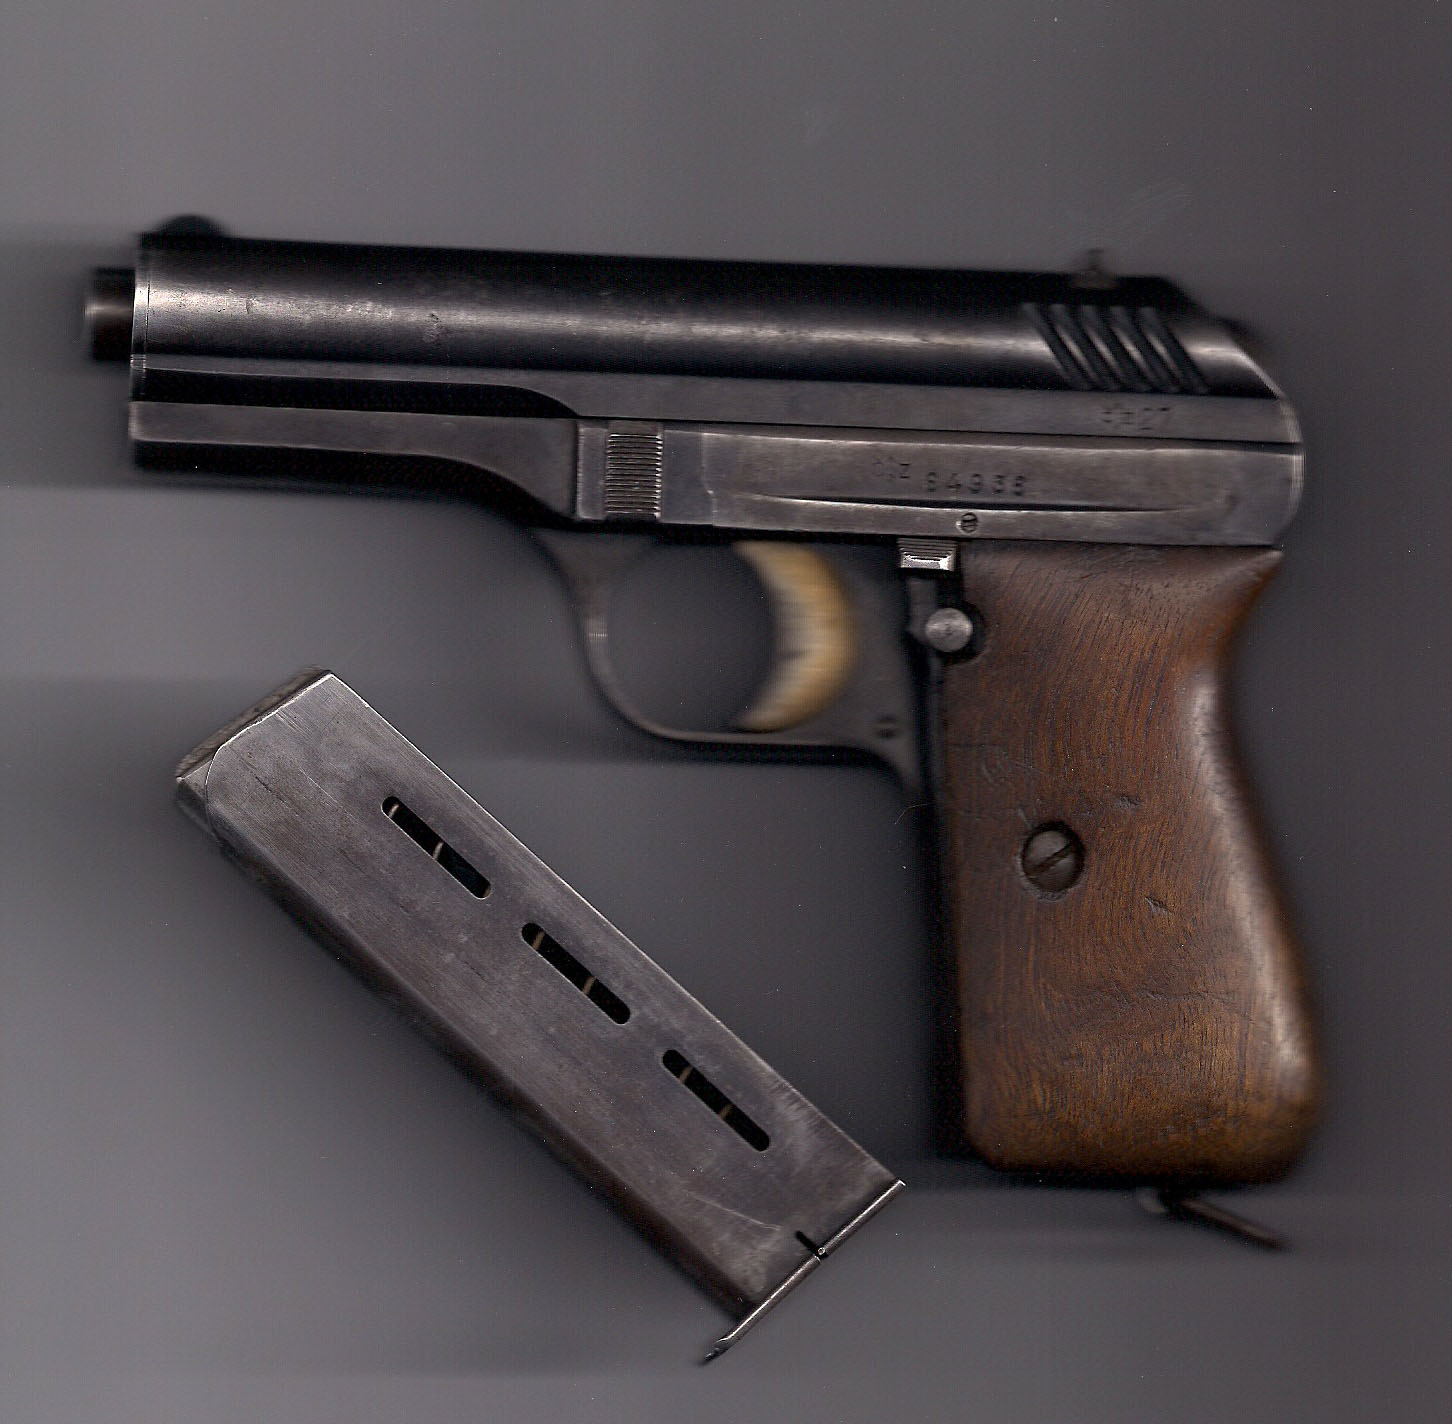 Cz-27 Czech made pistol